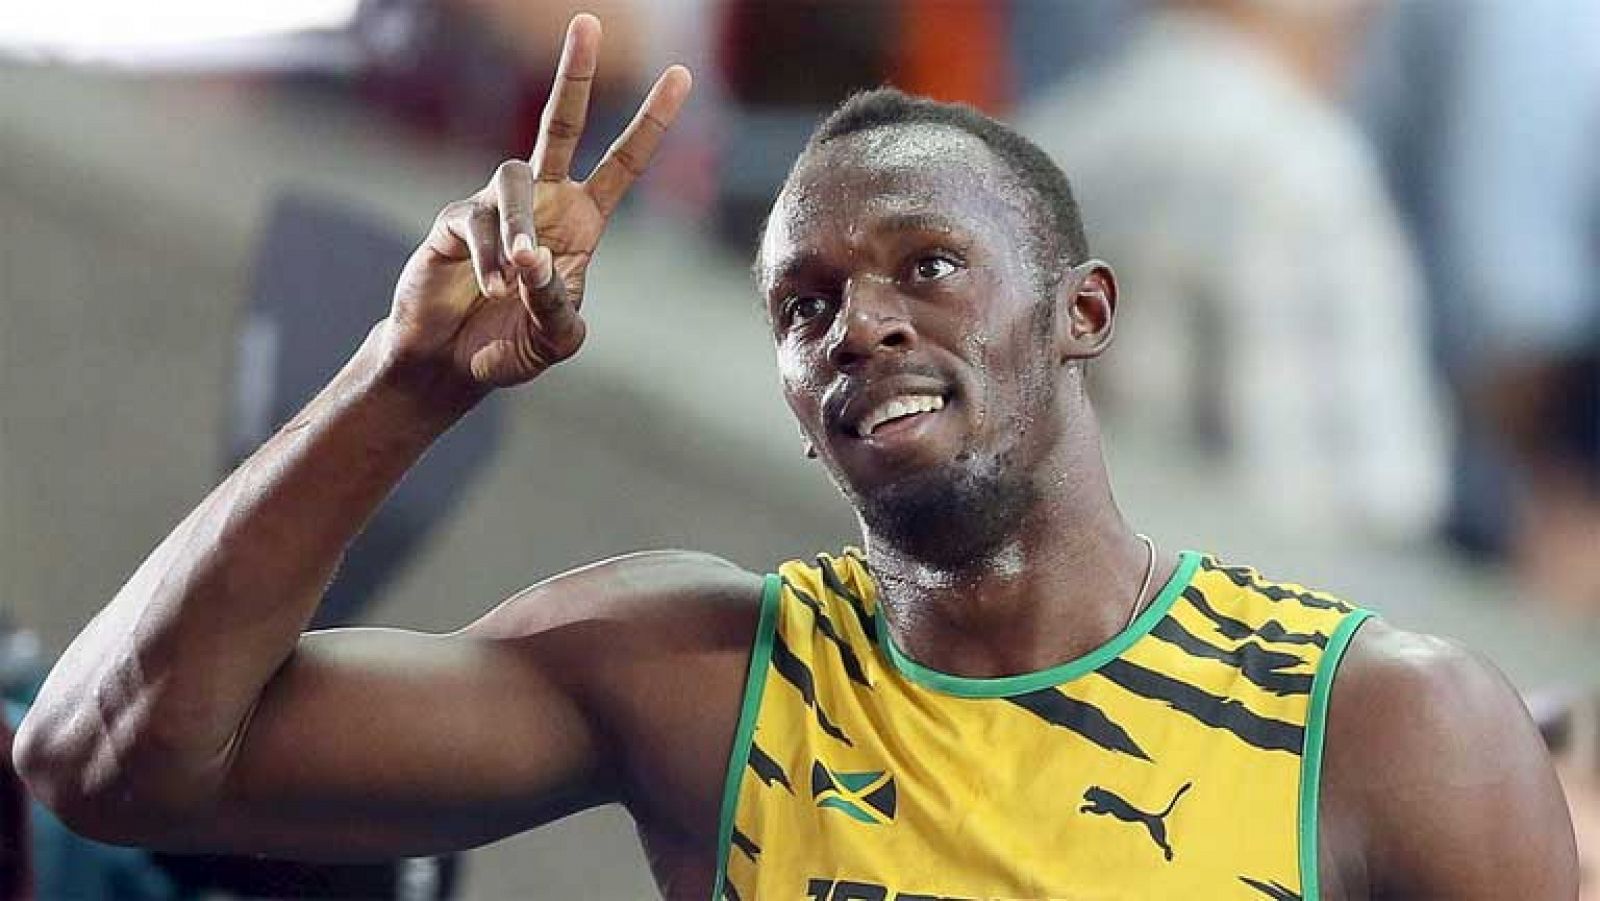 La segunda jornada de los Mundiales de Moscú de atletismo llega con uno de los platos fuertes; la final de los 100. ¿Podrá Usain Bolt recuperar el título que perdió hace dos años?